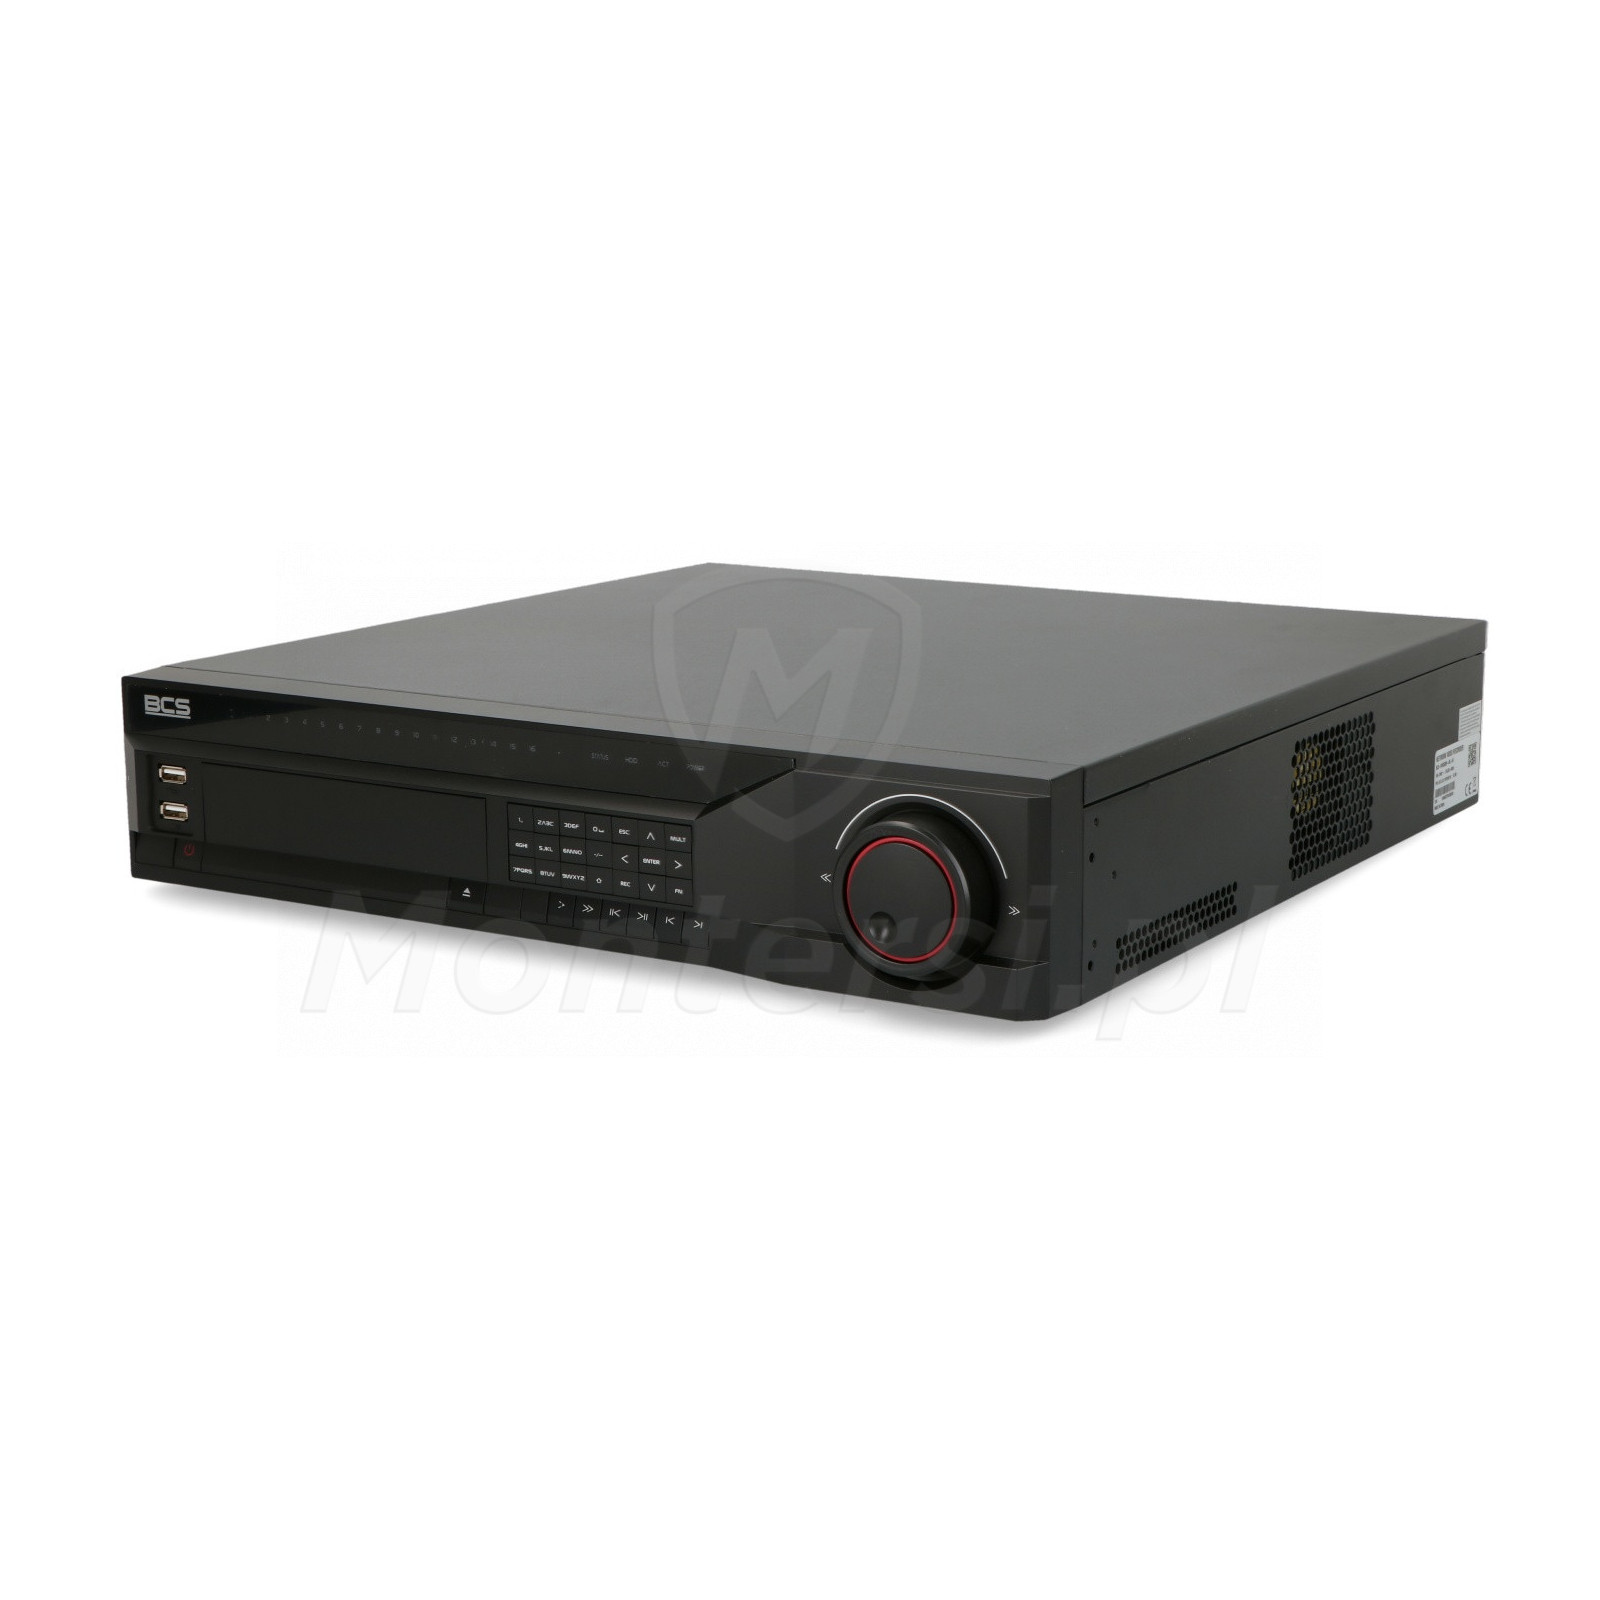 Rejestrator sieciowy BCS-NVR3208-4K-III